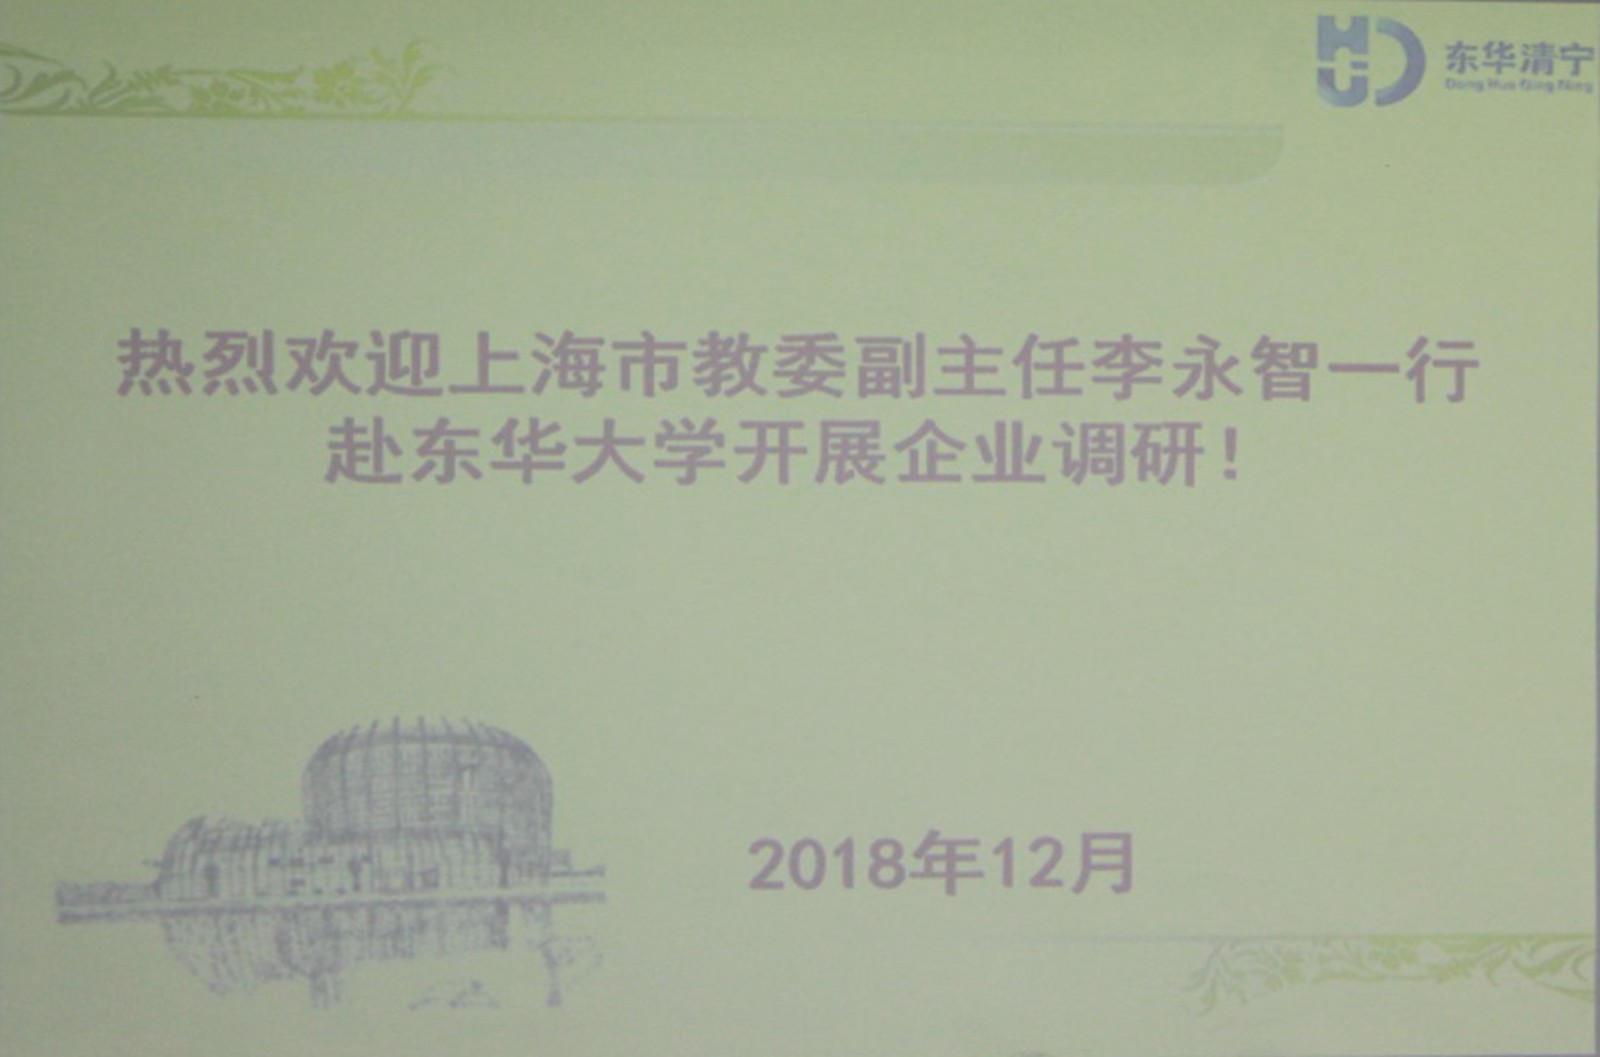 上海市教委李永智副主任一行到东华大学所属企业上海清宁环境规划设计有限公司走访、调研